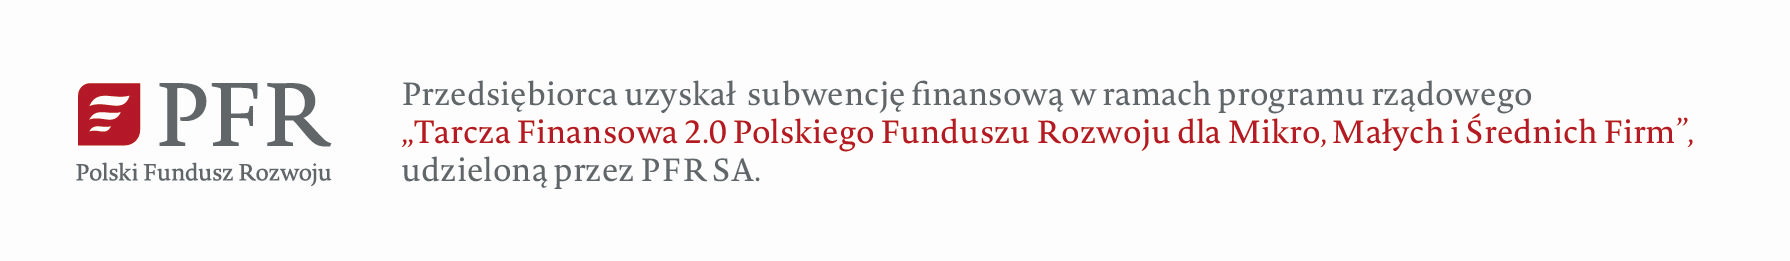 Przedsiębiorca uzyskał subwencję finansową w ramach programu rządowego “Tarcza Finansowa 2.0 Polskiego Fundusz Rozwoju dl Mikro, Małych i Średnich Firm”, udzieloną przez PFR SA.